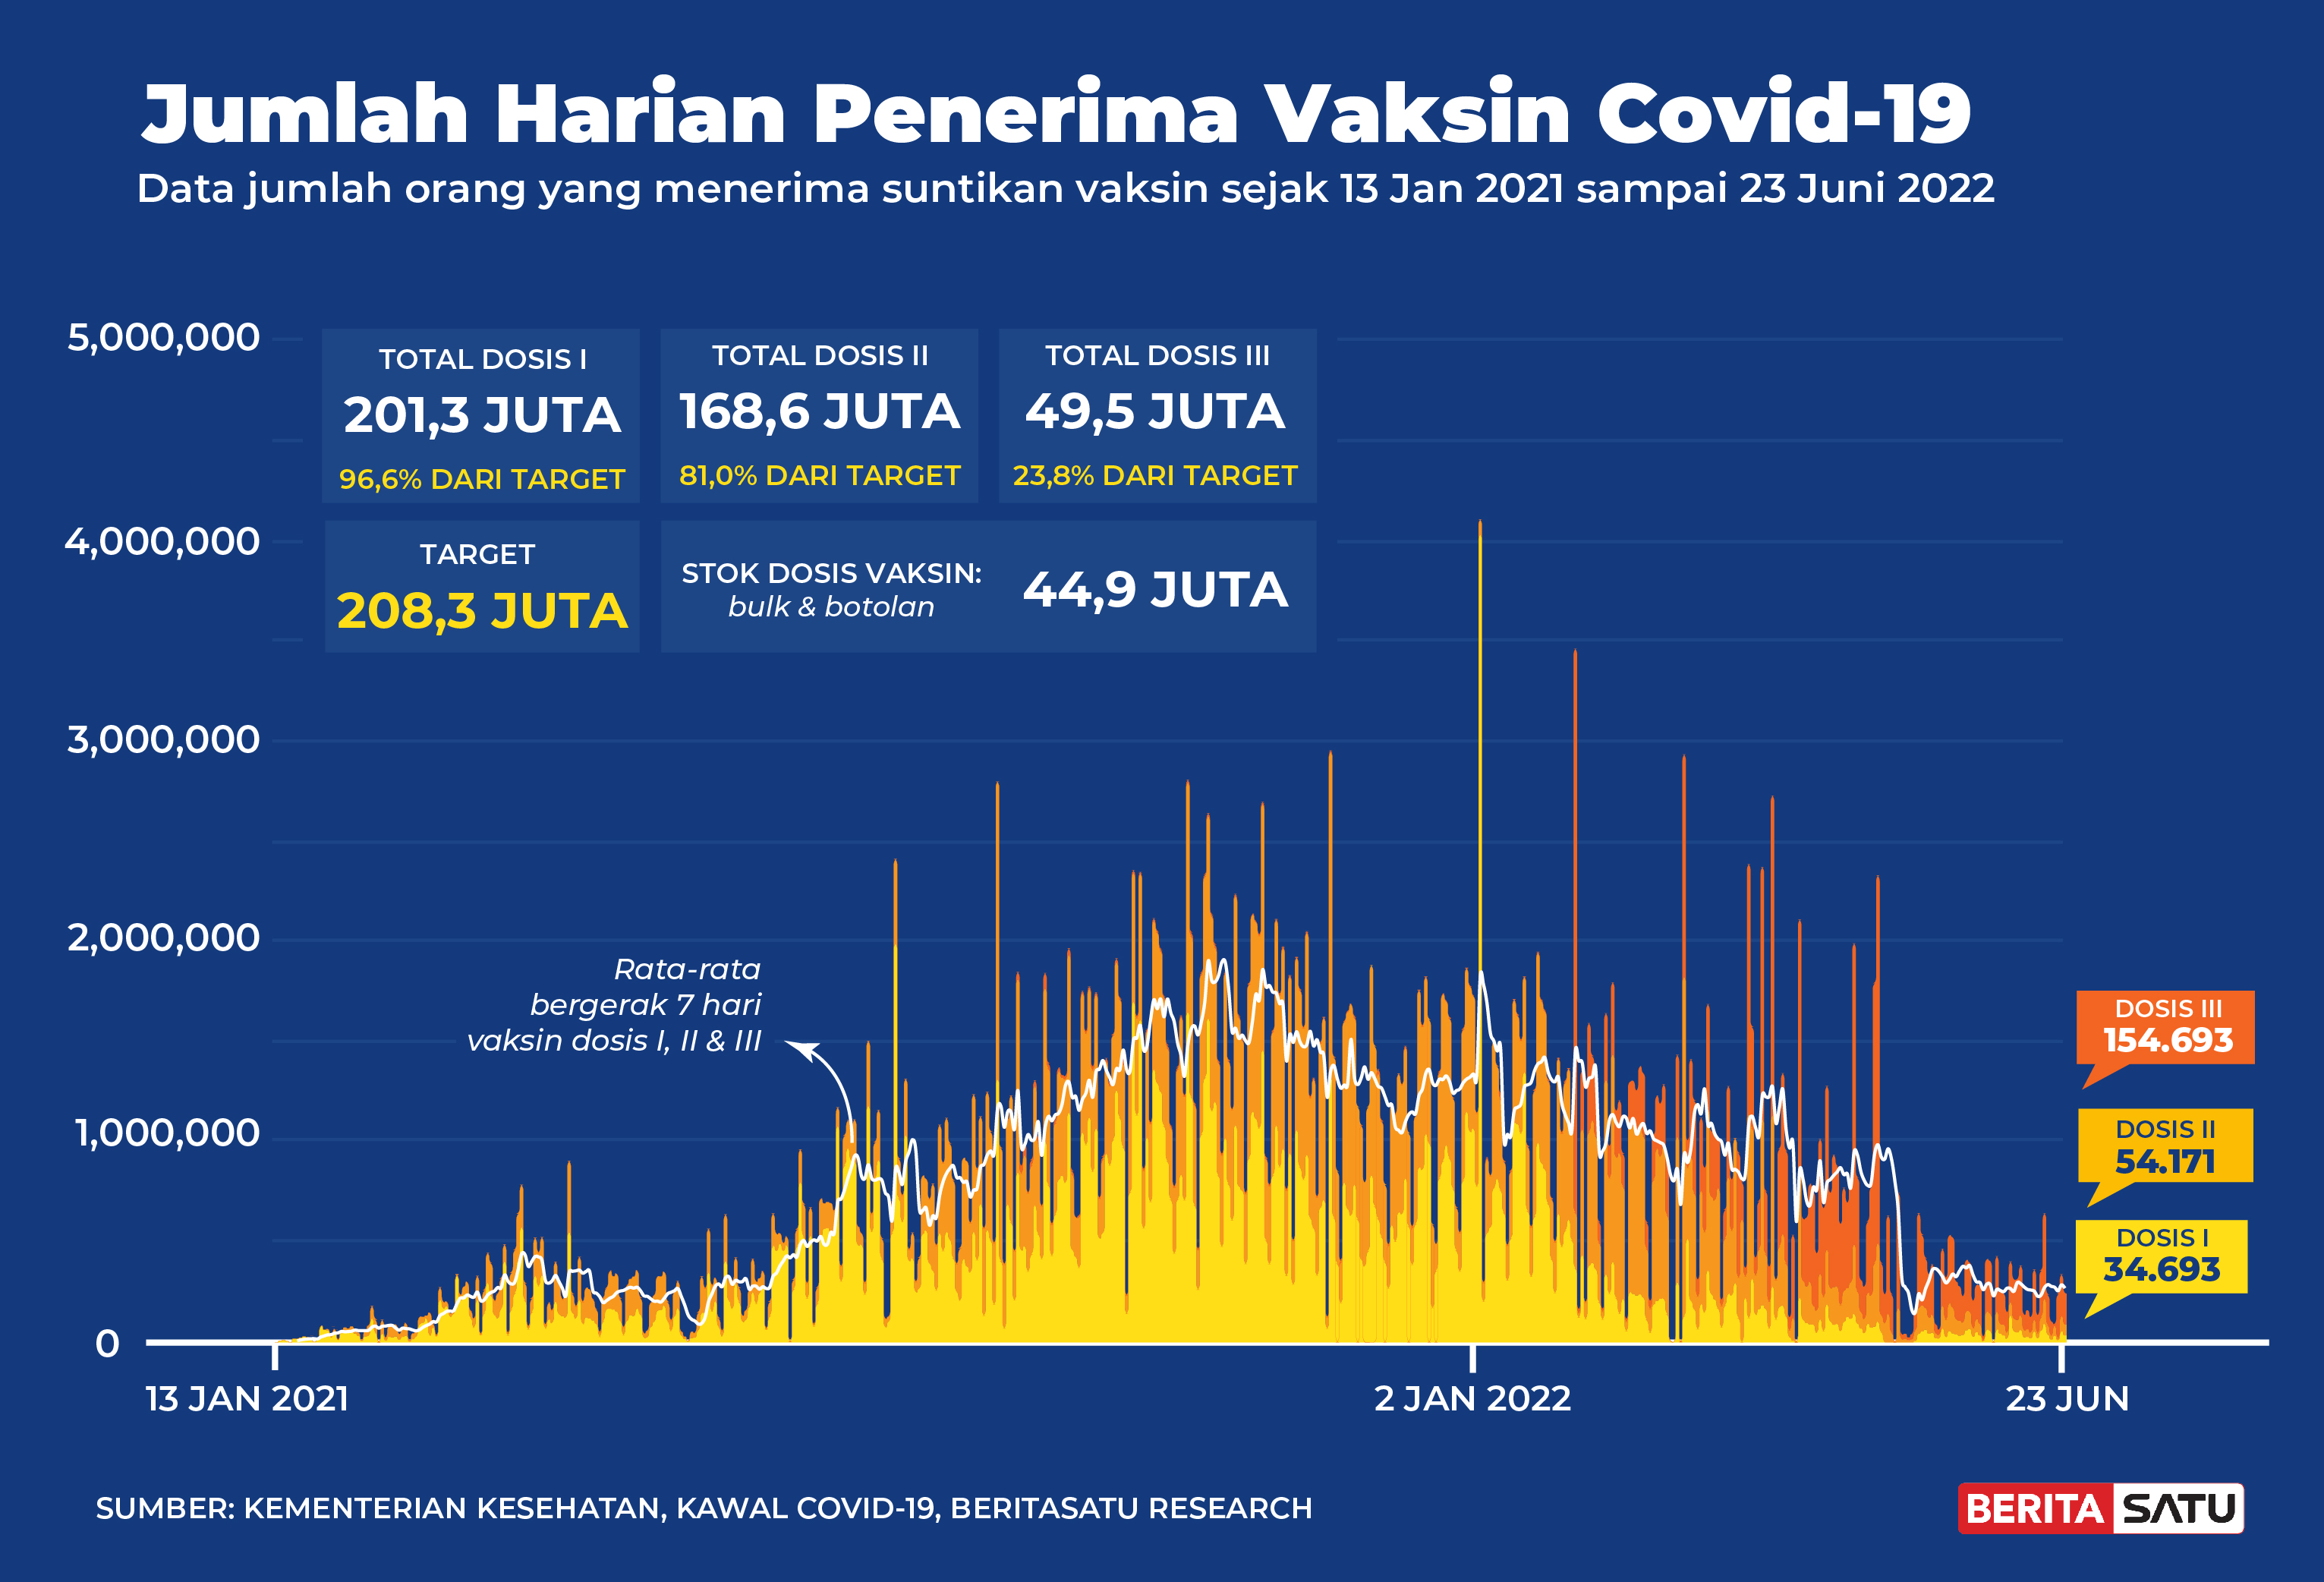 Penerima Vaksin Covid-19 di Indonesia sampai 23 Juni 2022